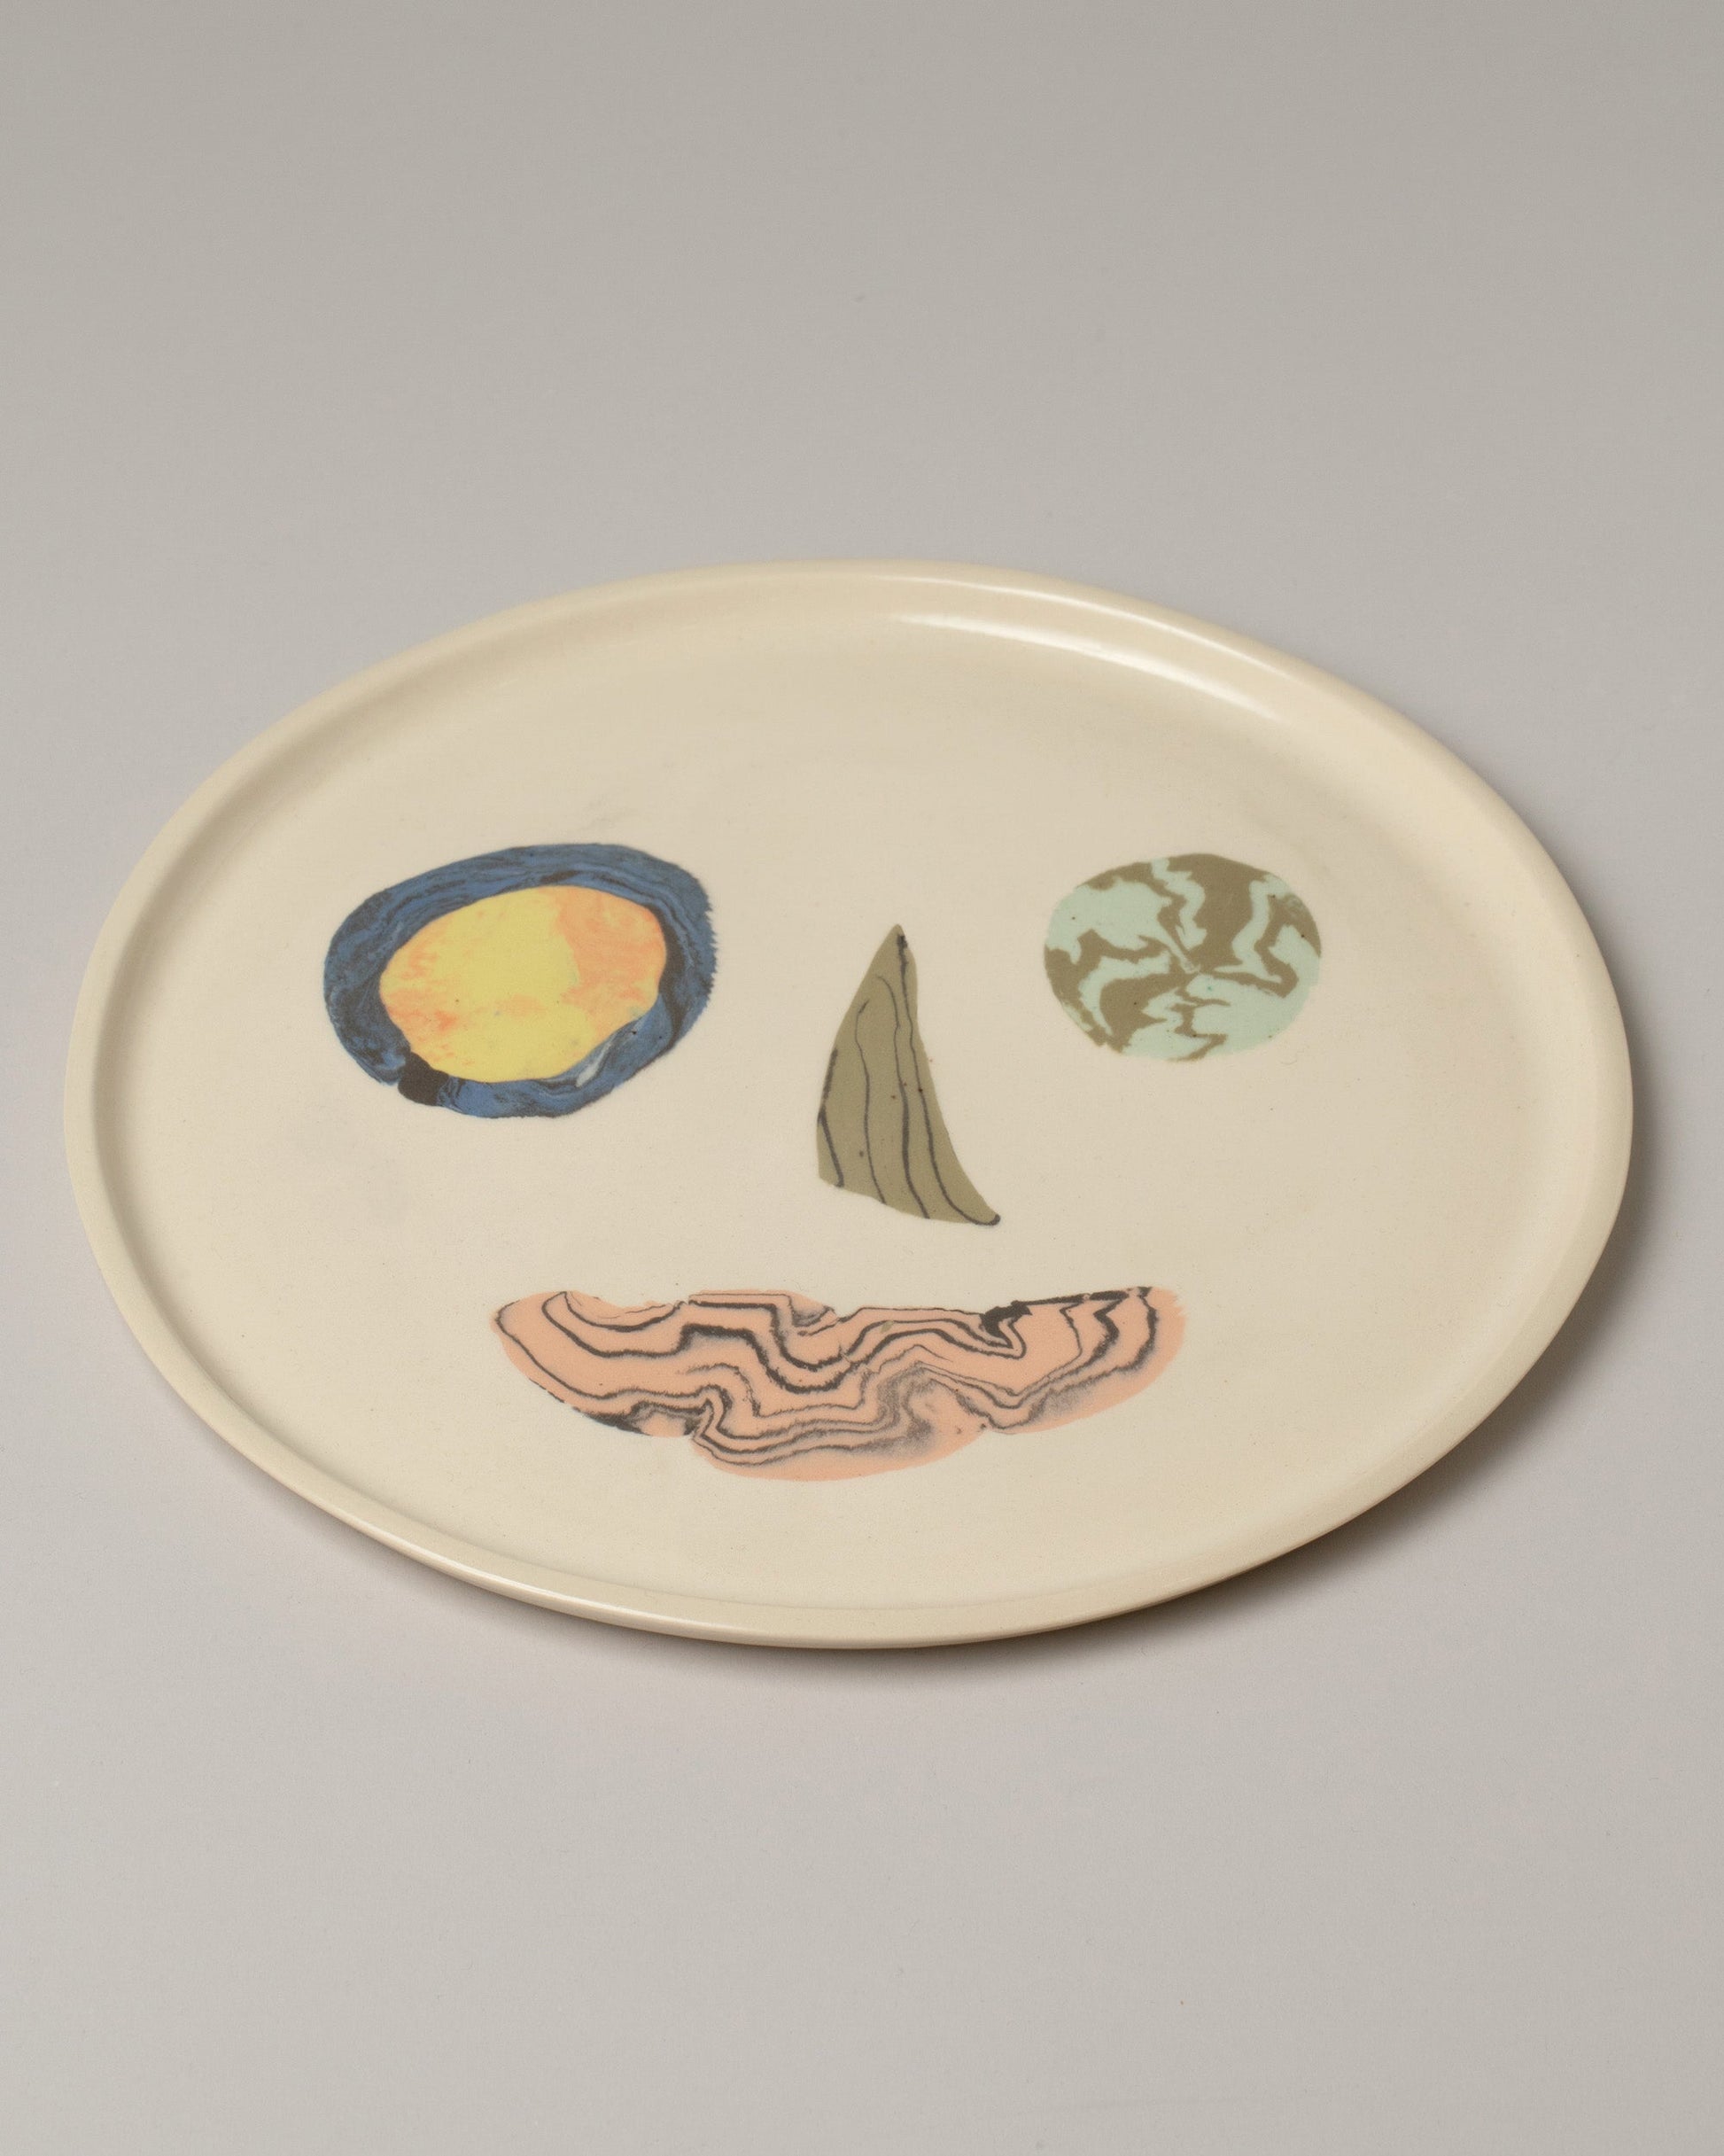 E.E. Ceramics Serving Plate - Smiley on light color background.